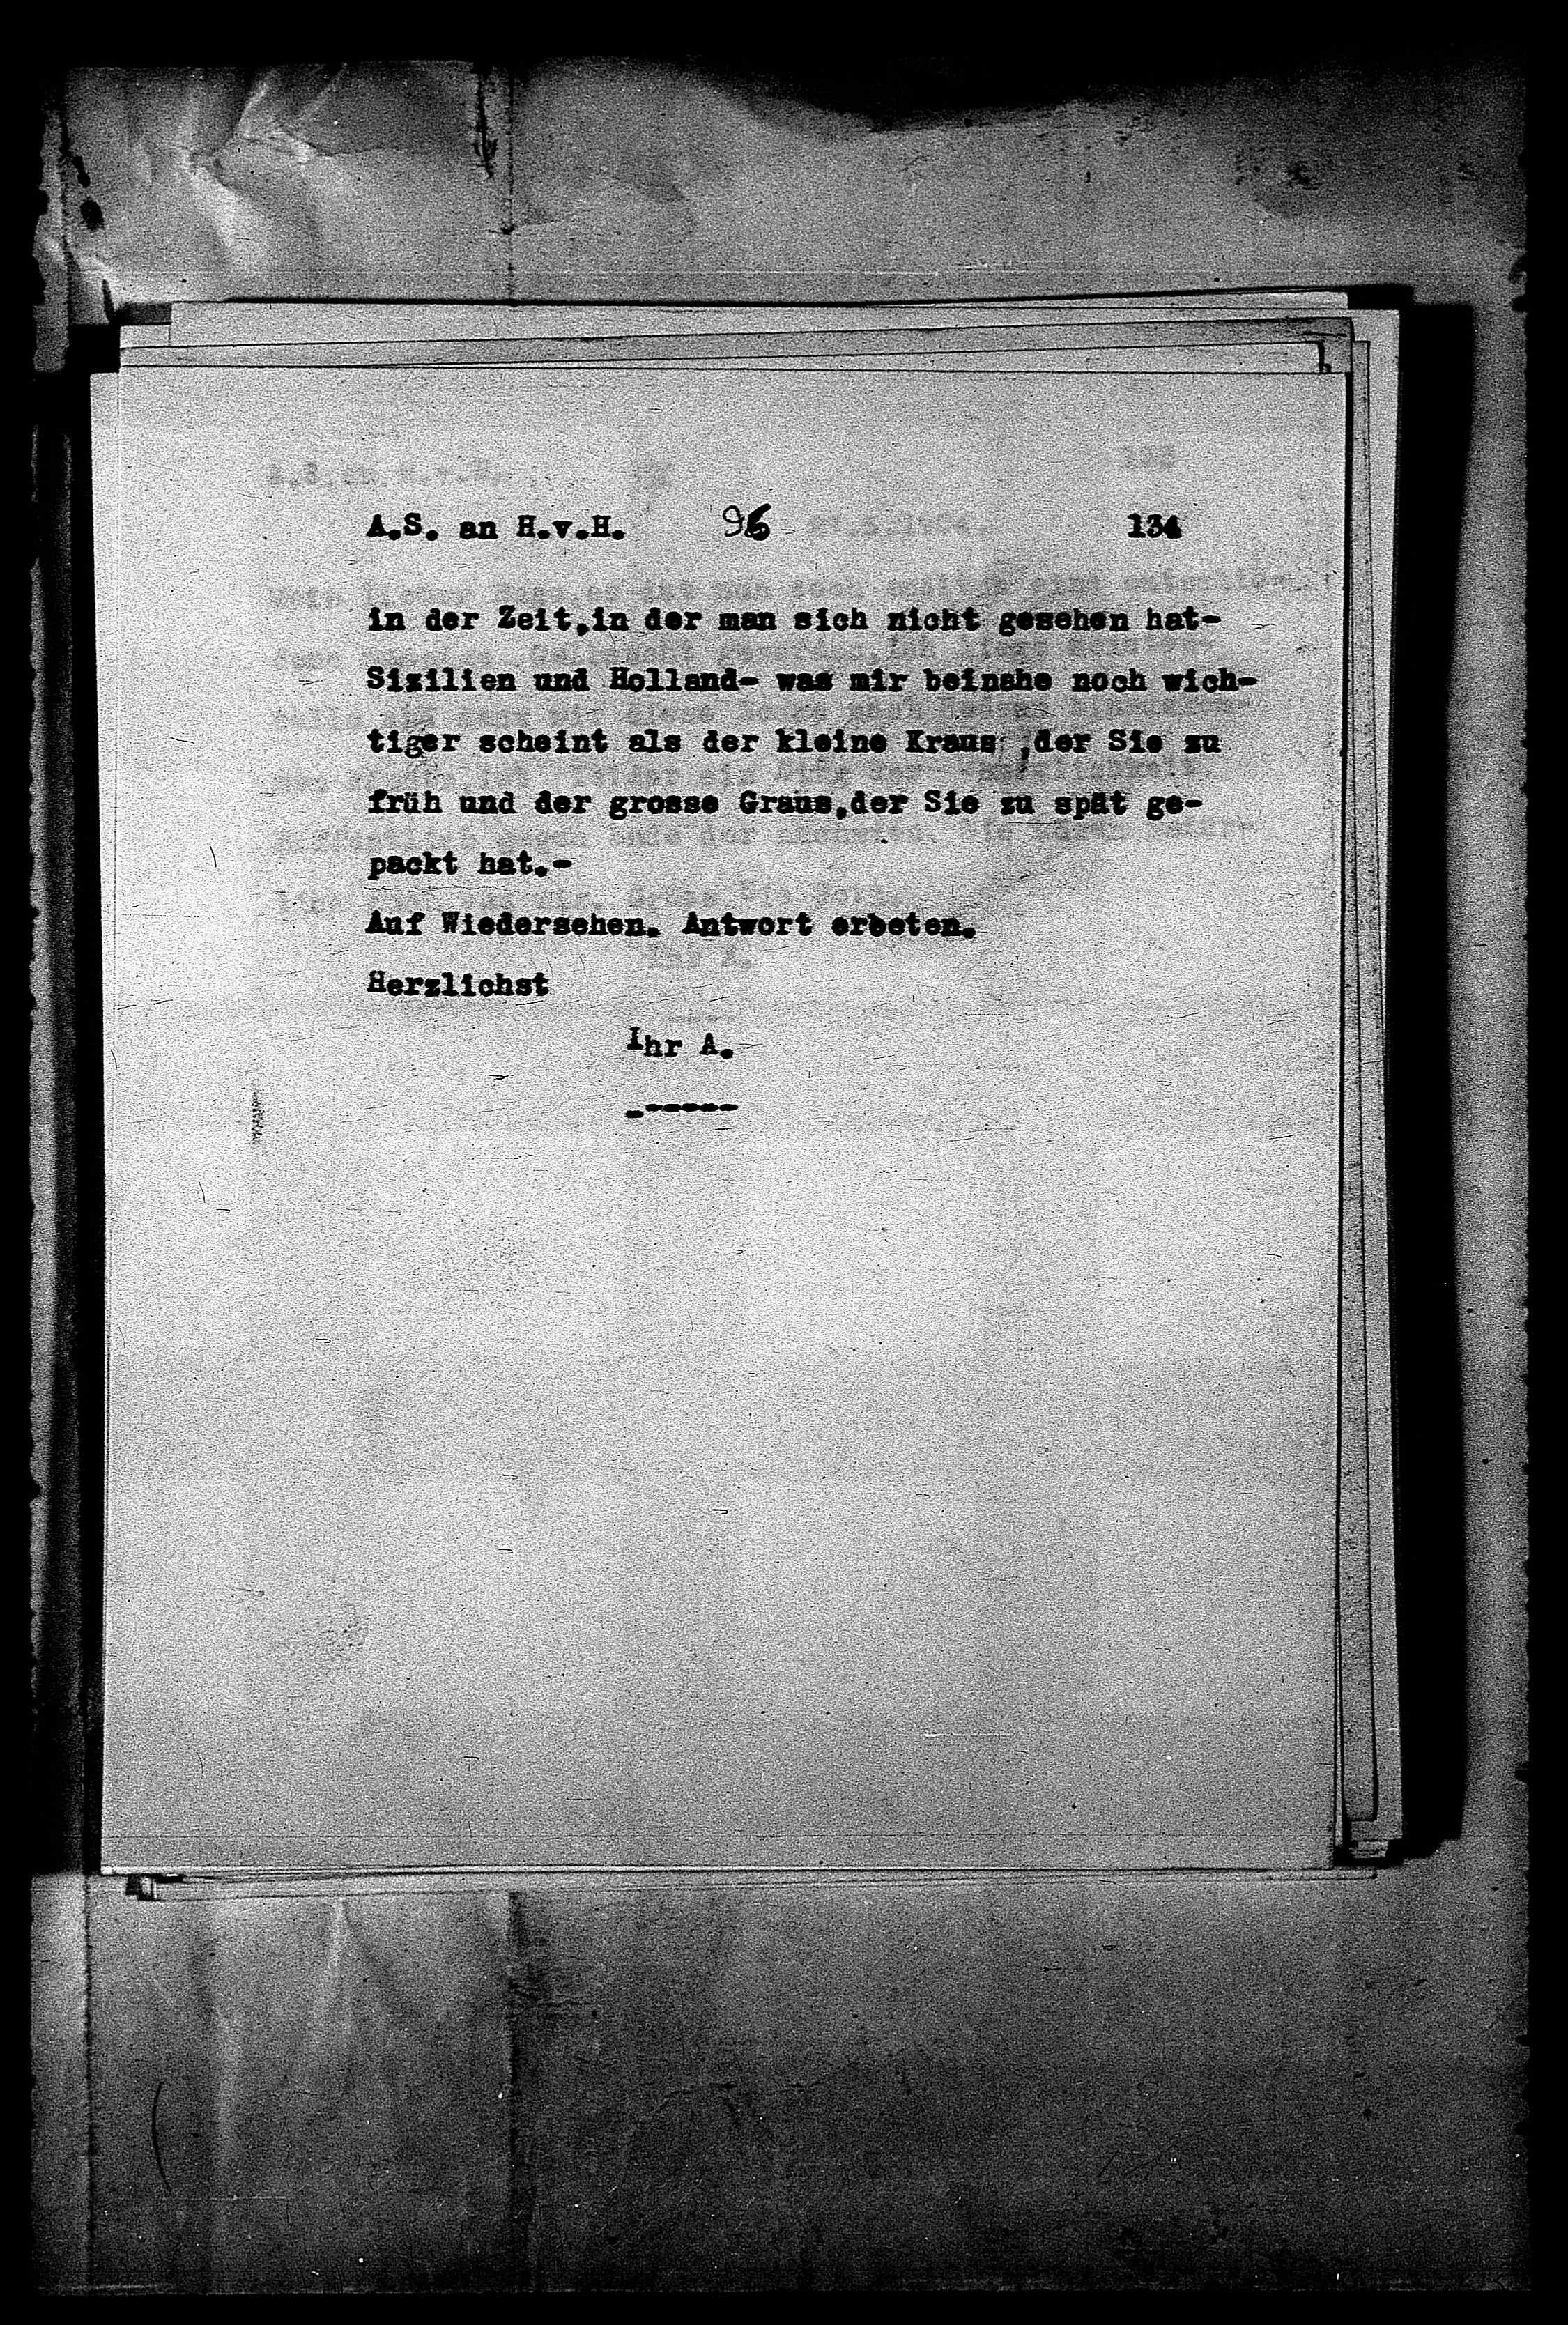 Vorschaubild für Hofmannsthal, Hugo von_AS an HvH Abschrift, HvH an AS, Originale (Mikrofilm 38), Seite 140